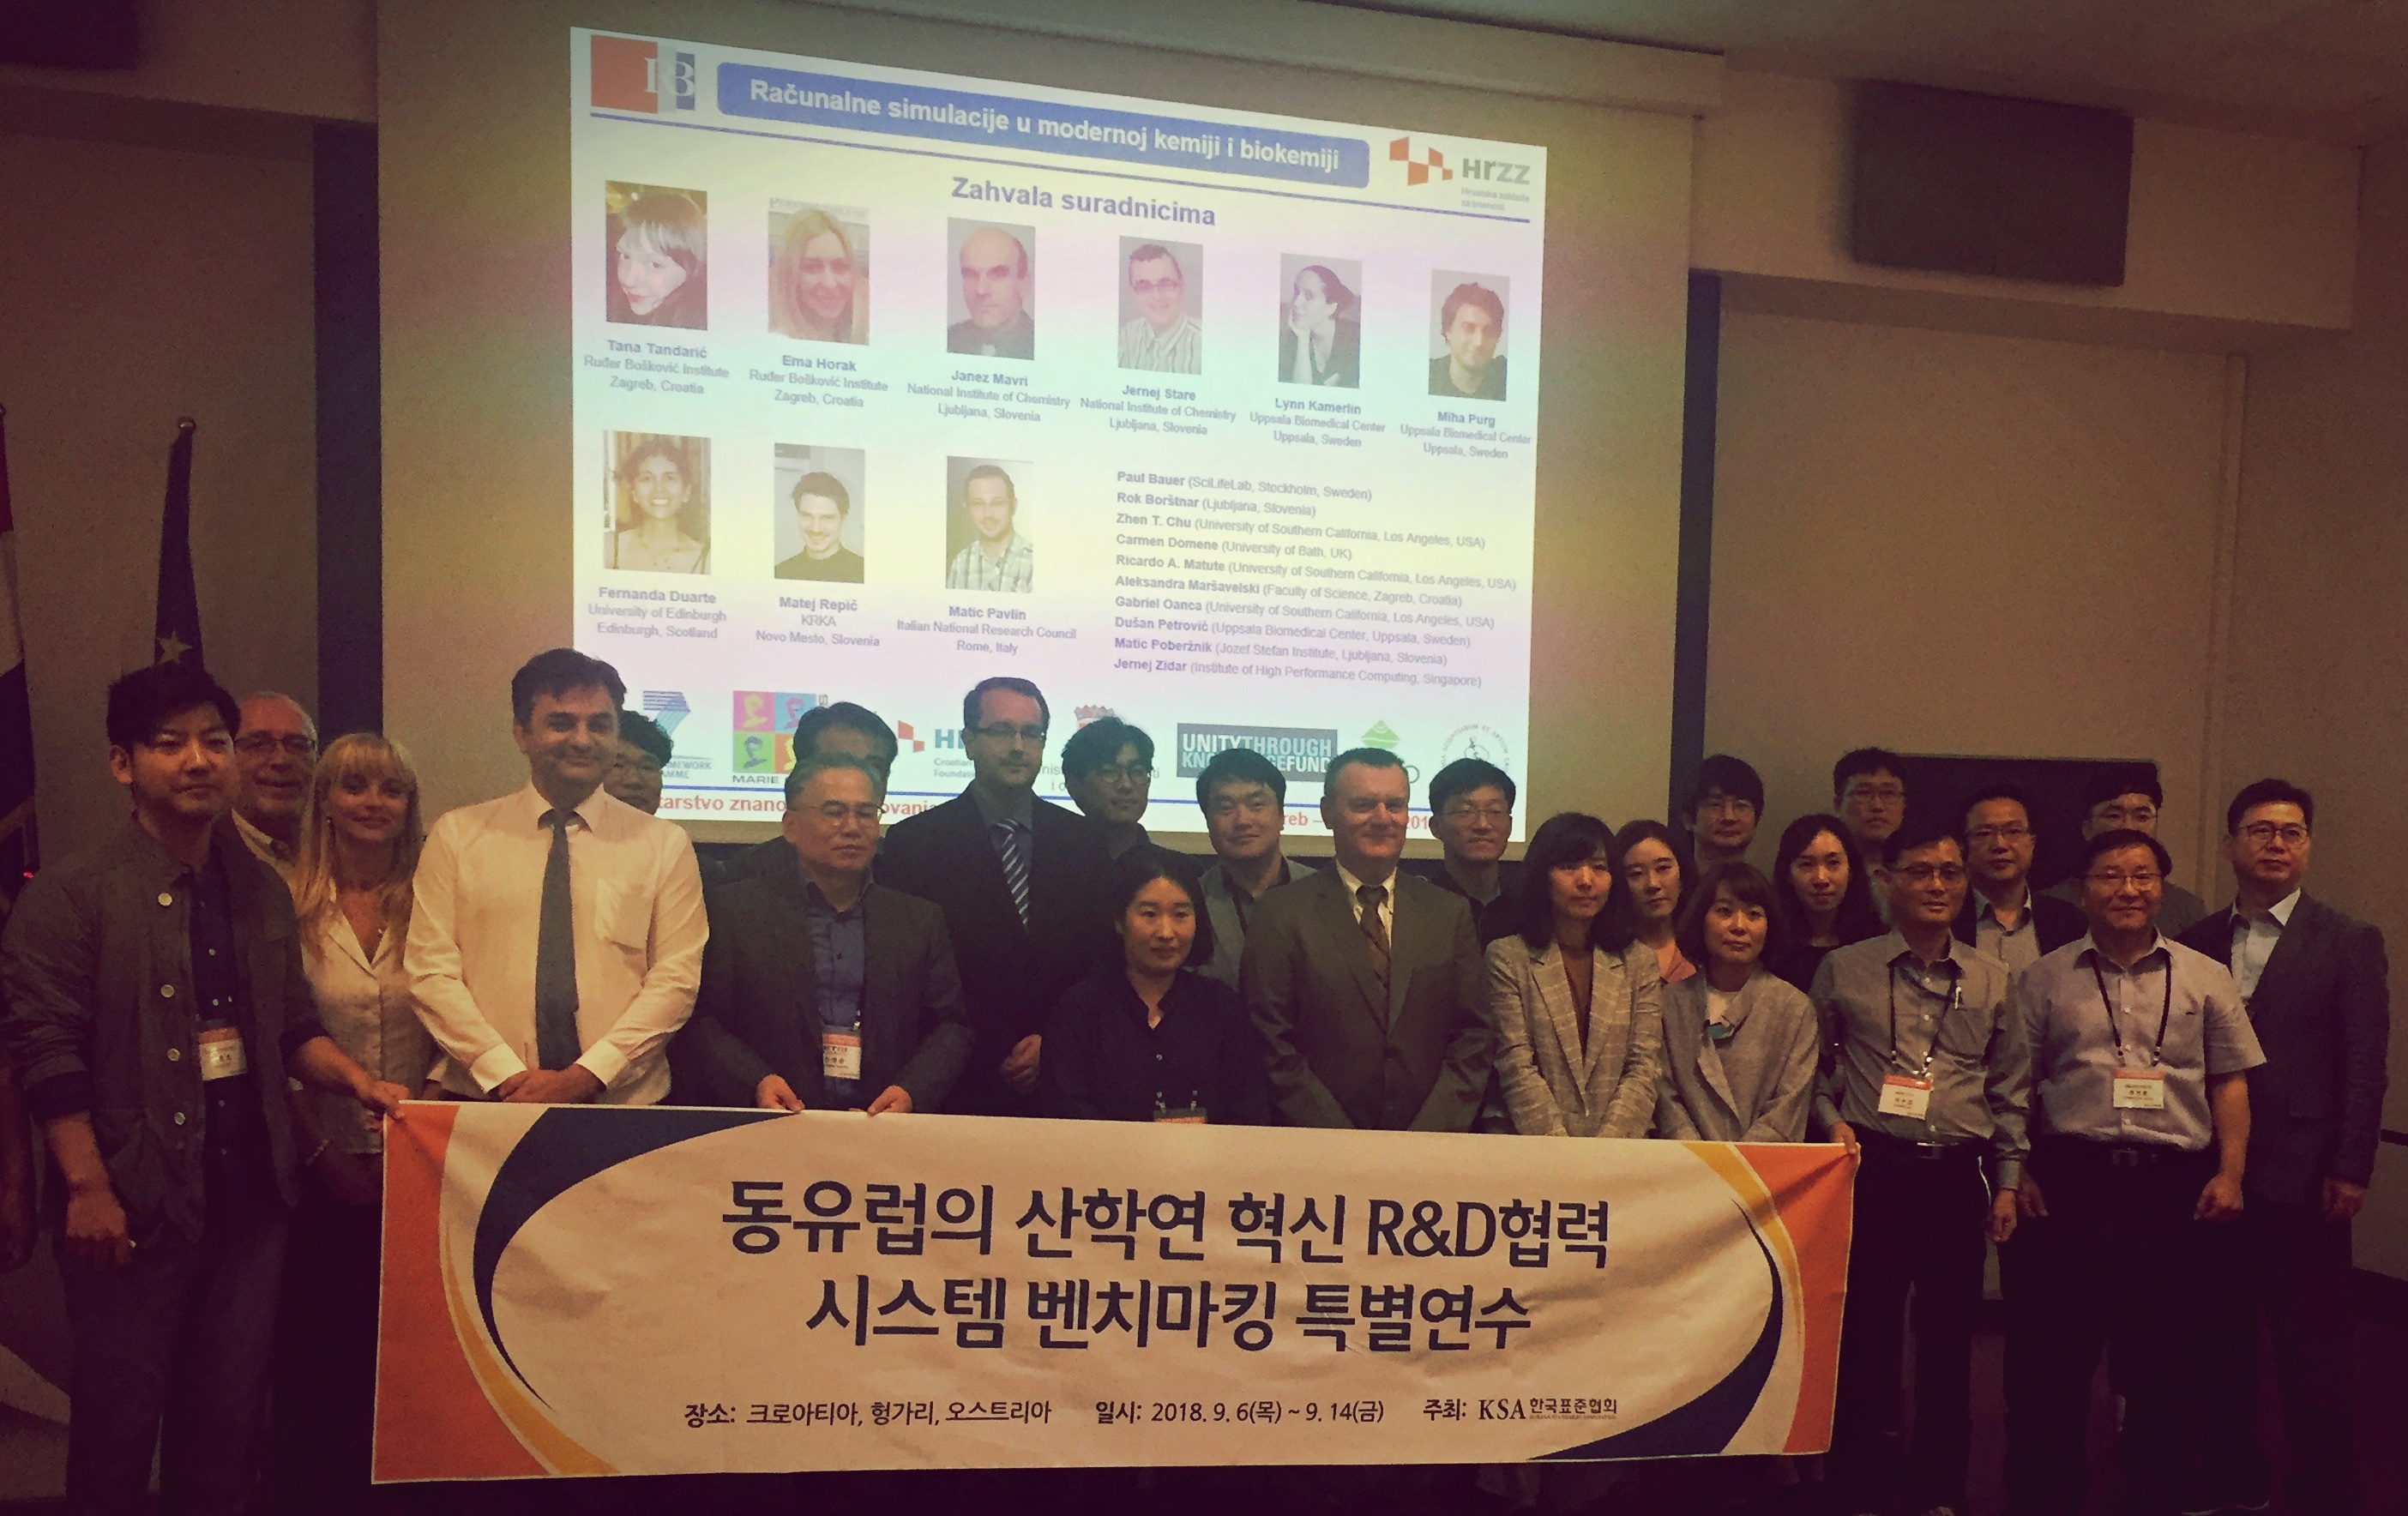 IRB predstavio HRZZ projekt tijekom službene posjete delegacije Republike Koreje